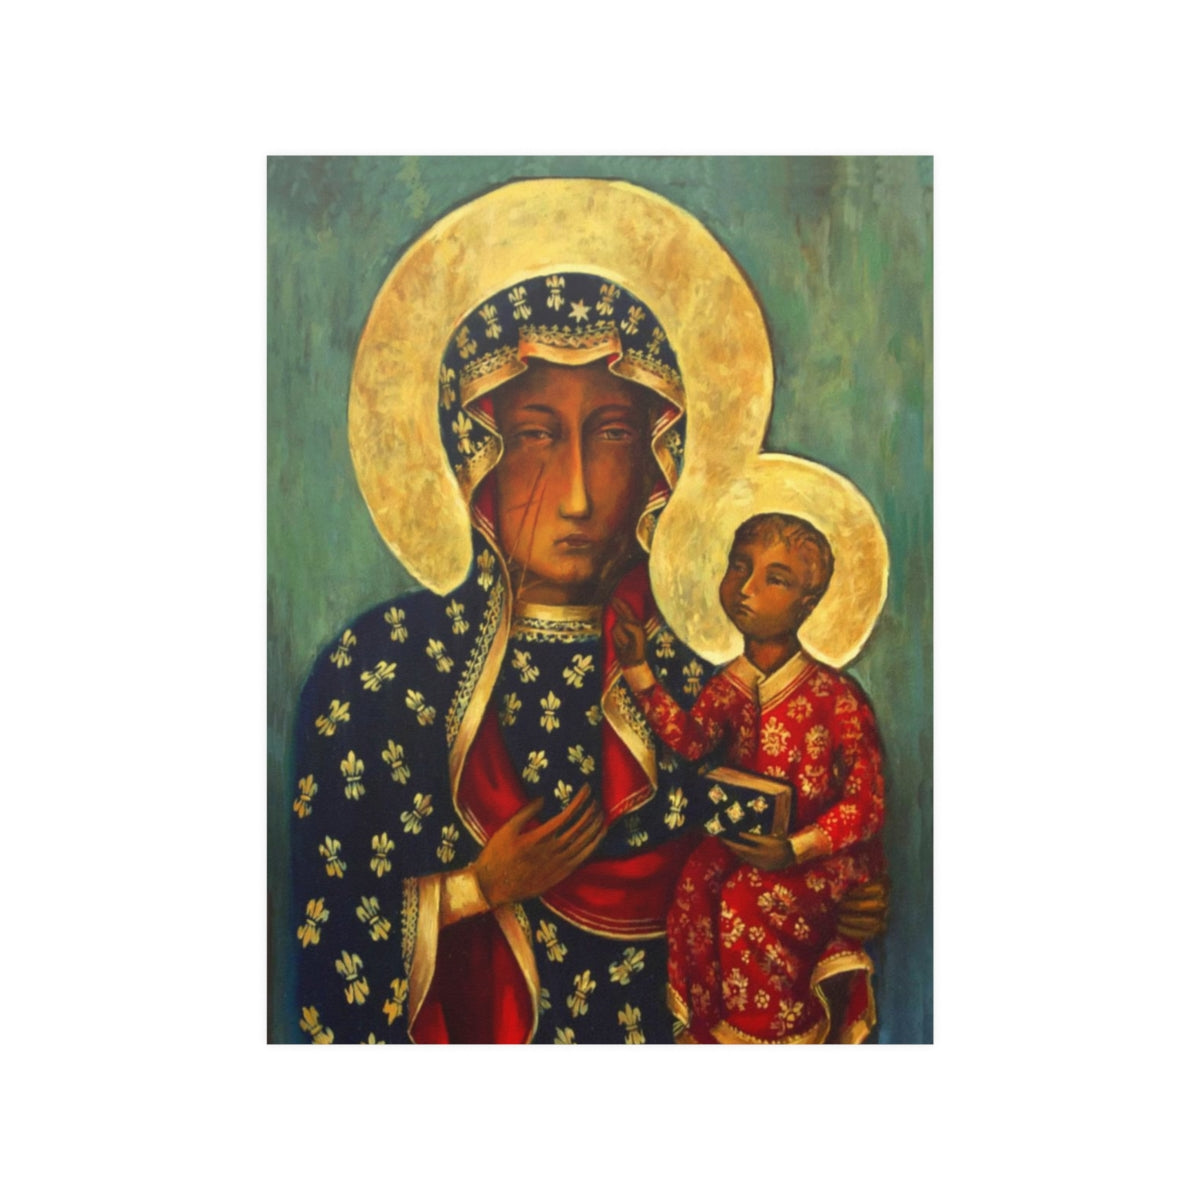 Our Lady Of Czestochowa Black Madonna By Jasna Gora Shrine Print Poster